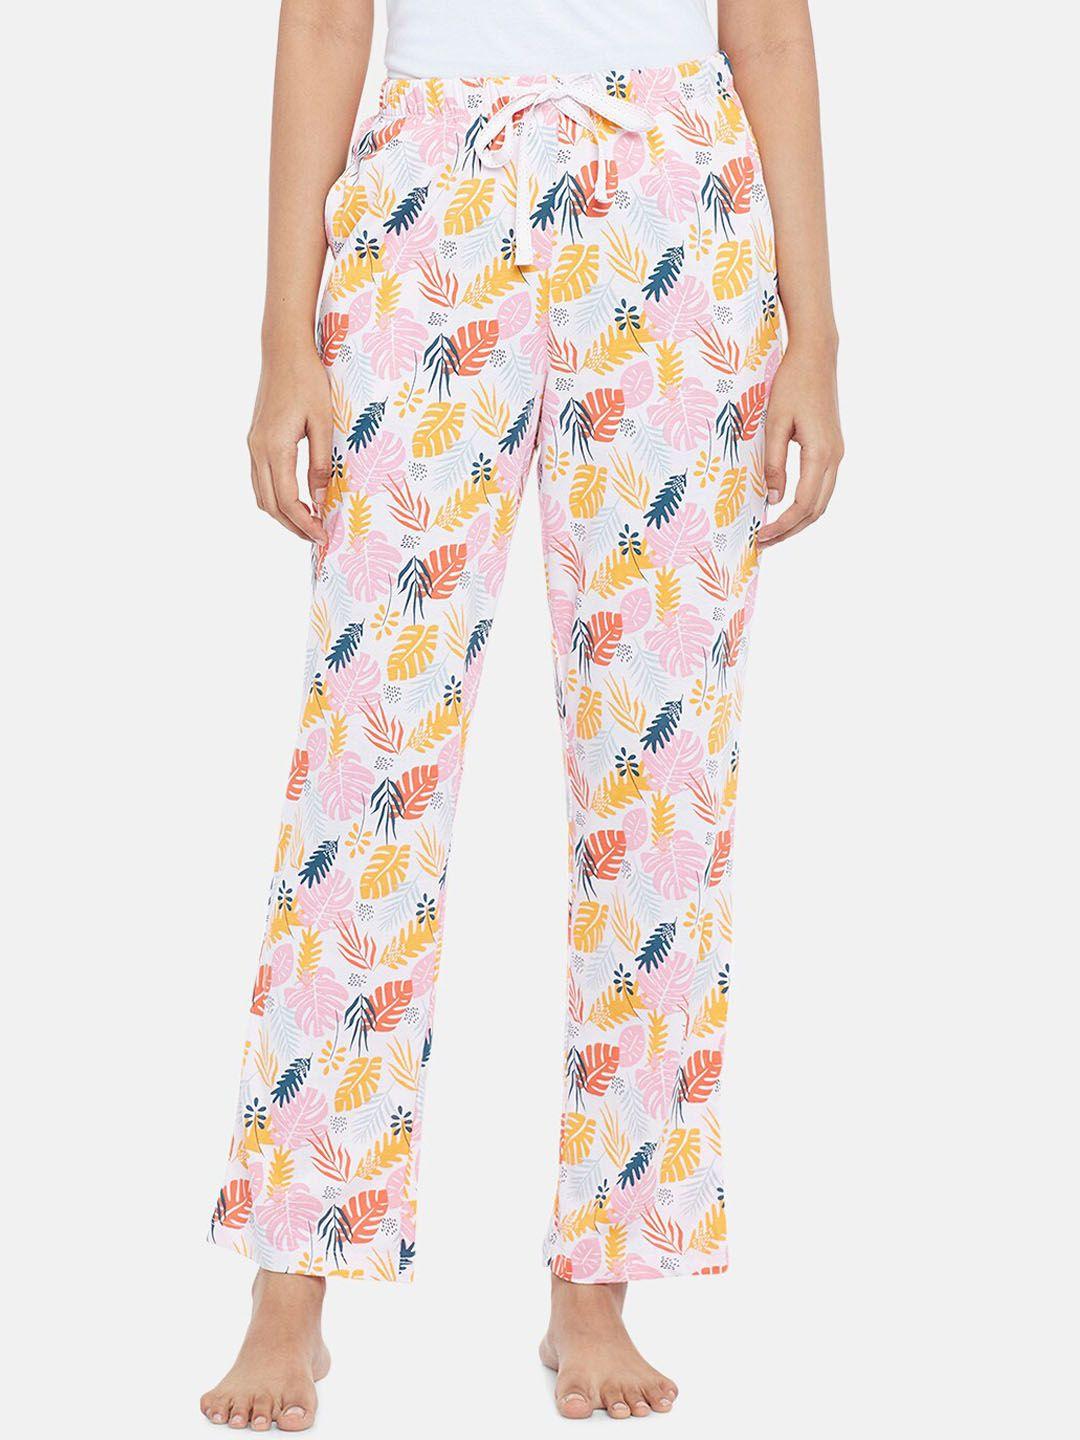 dreamz by pantaloons women white & pink printed lounge pants